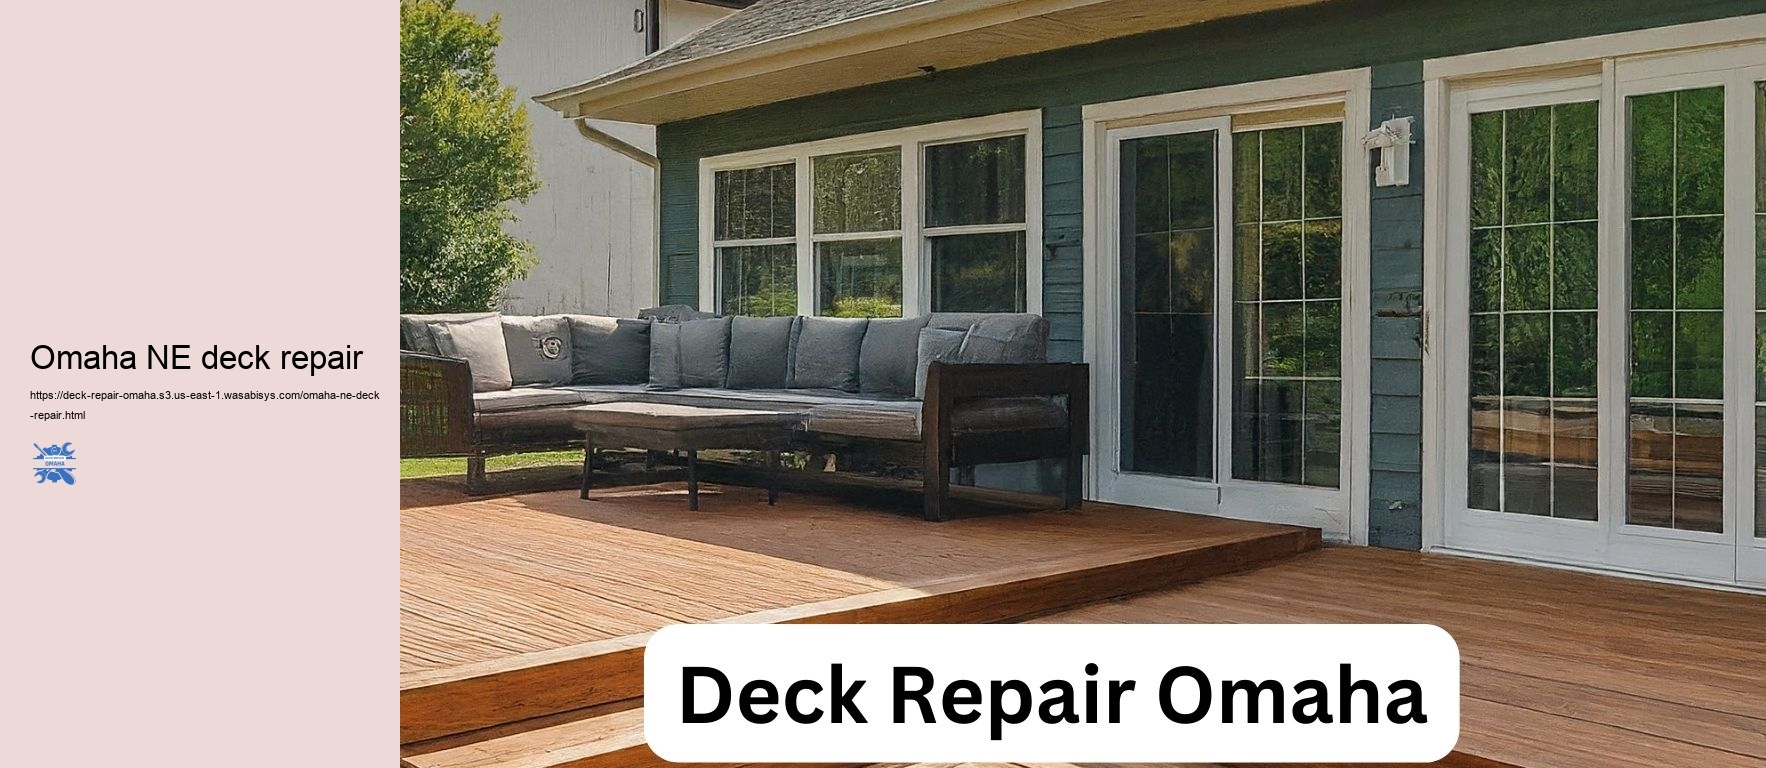 Omaha NE deck repair